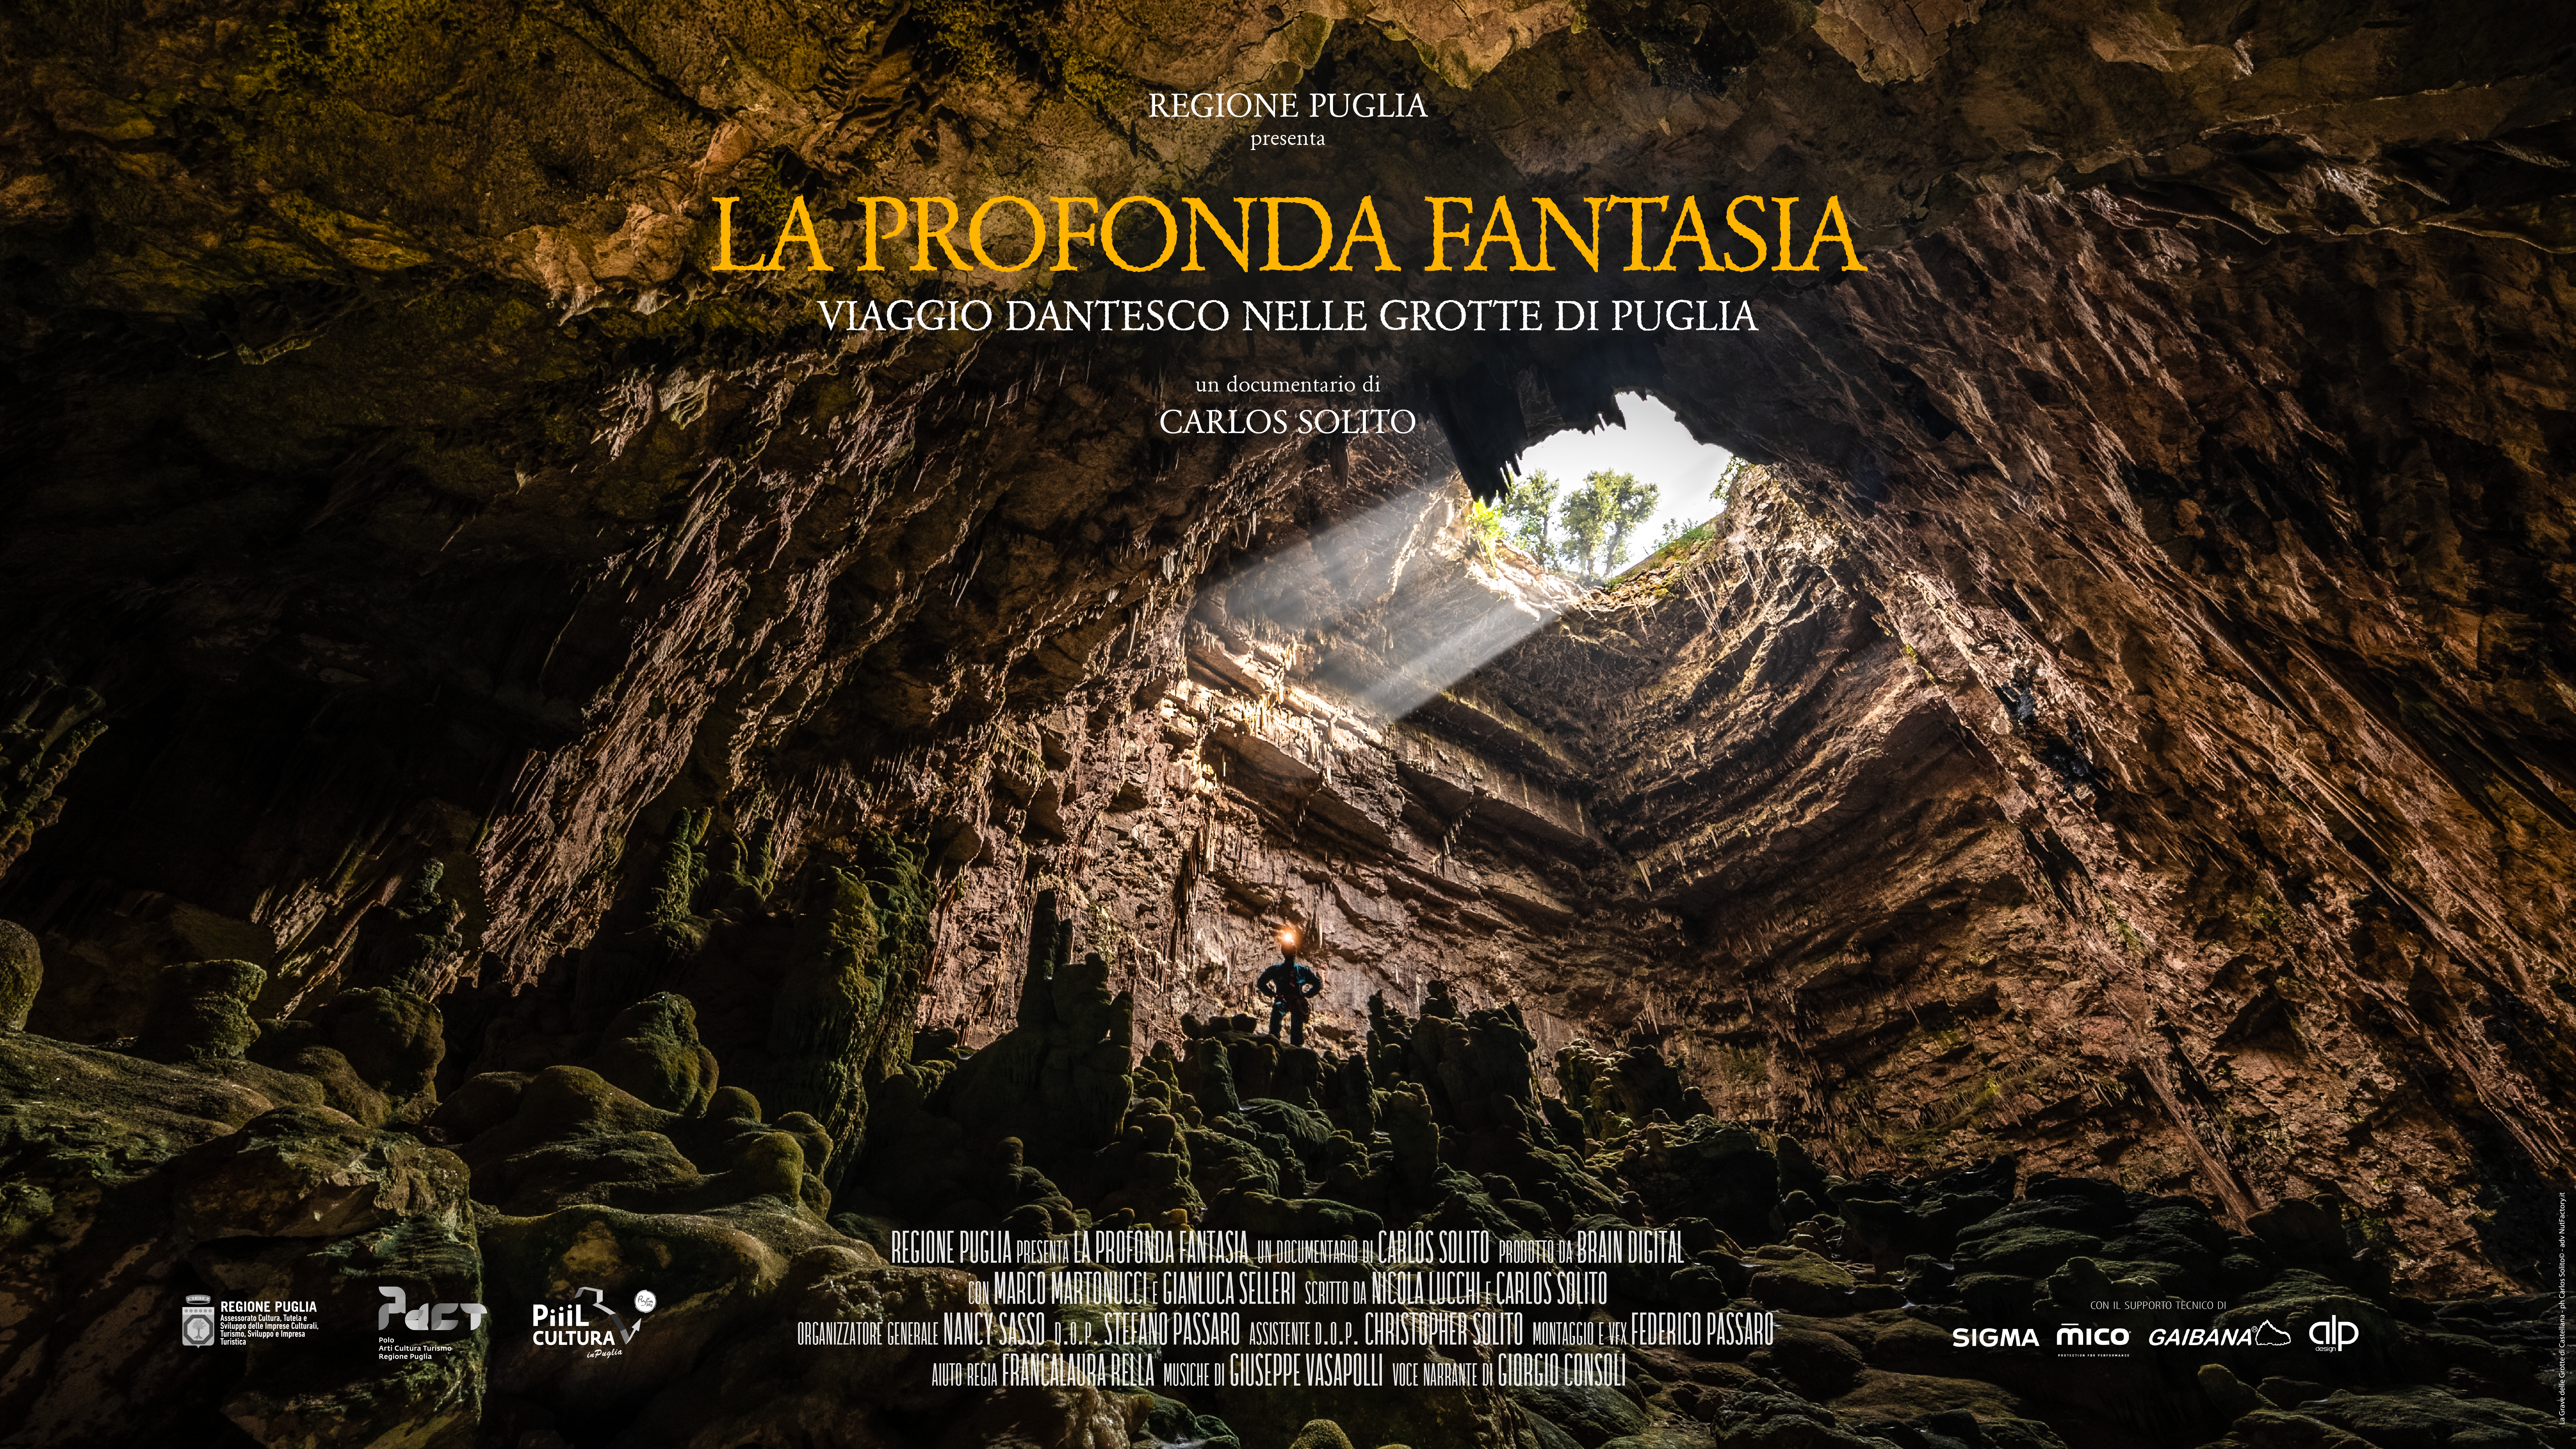 Matera Film Festival: nella quinta giornata conferenza su Pasolini e anteprima nazionale del documentario “La profonda fantasia” di Carlos Solito